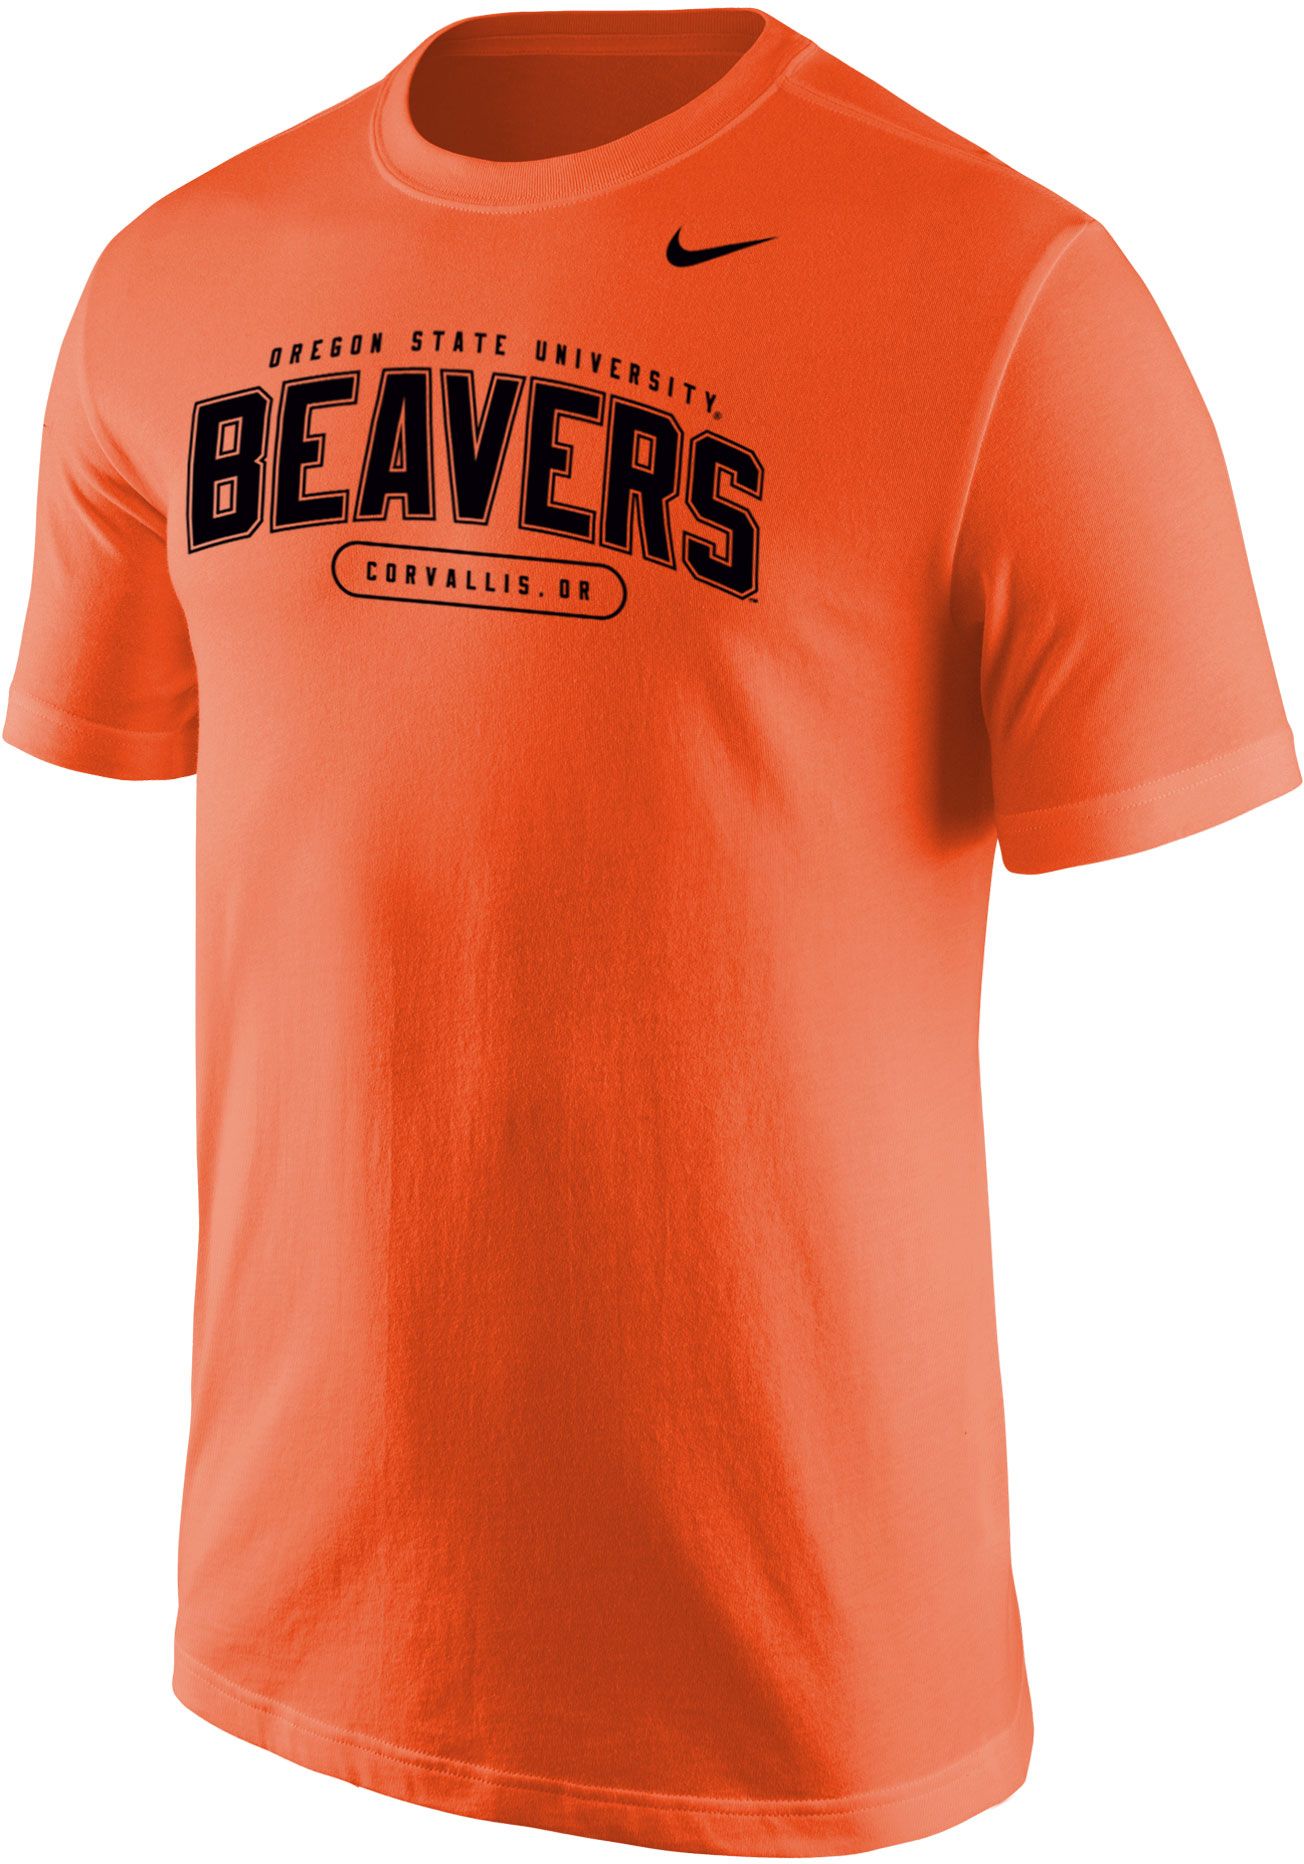 Beavers lacrosse legends jersey